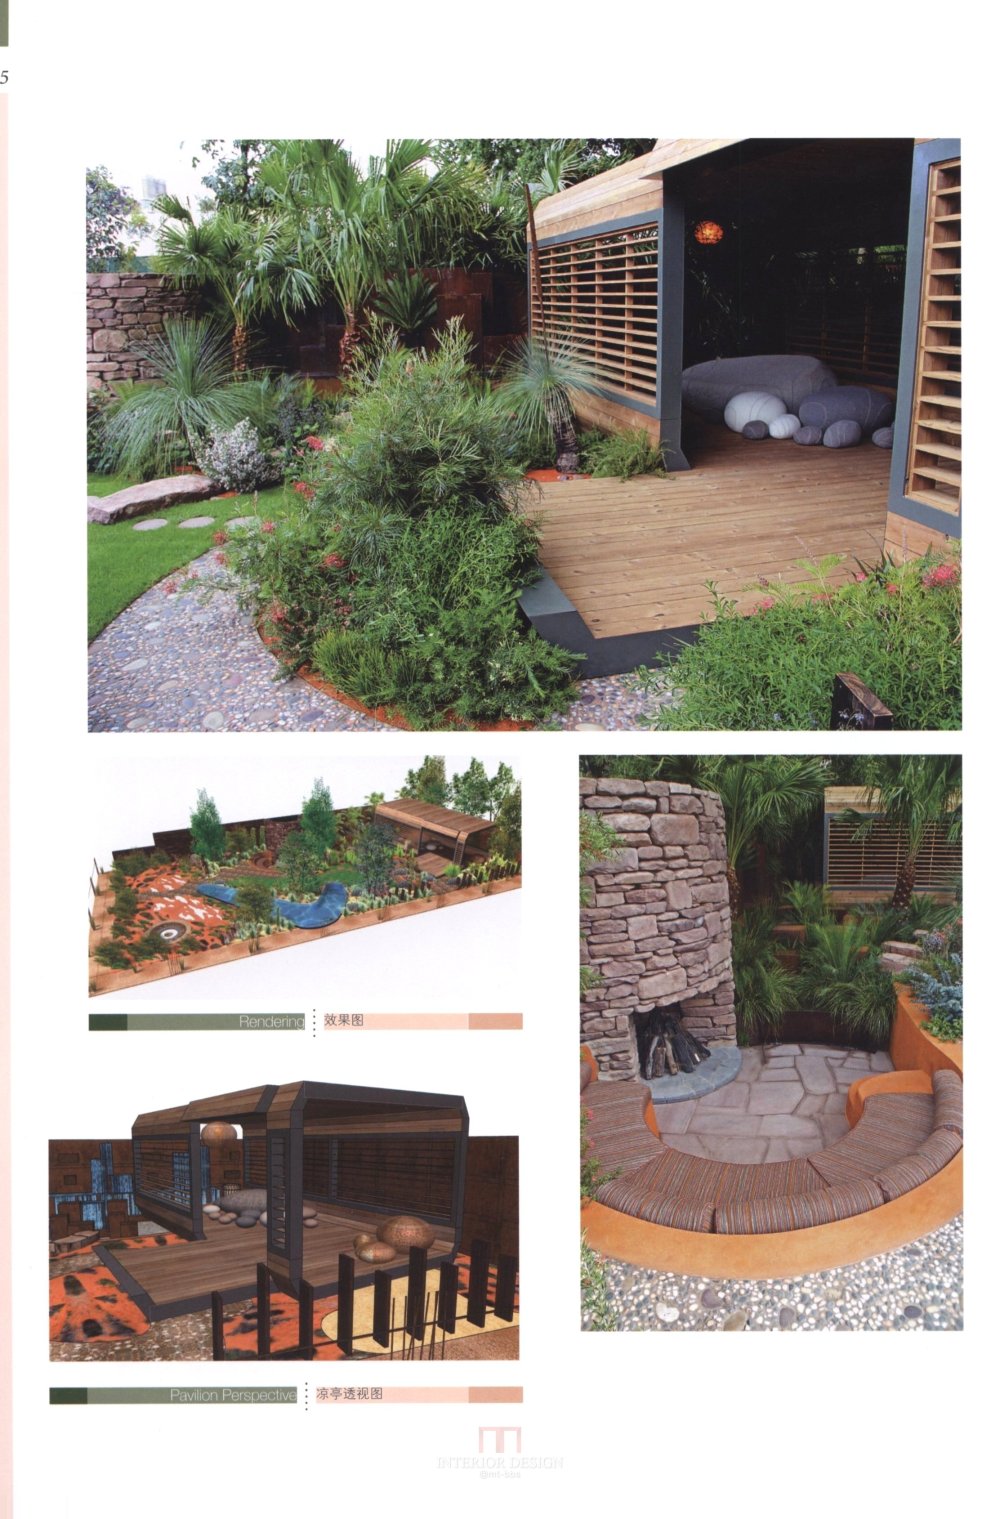 别墅庭园规划与设计Villa Garden Plan & Design_125.jpg